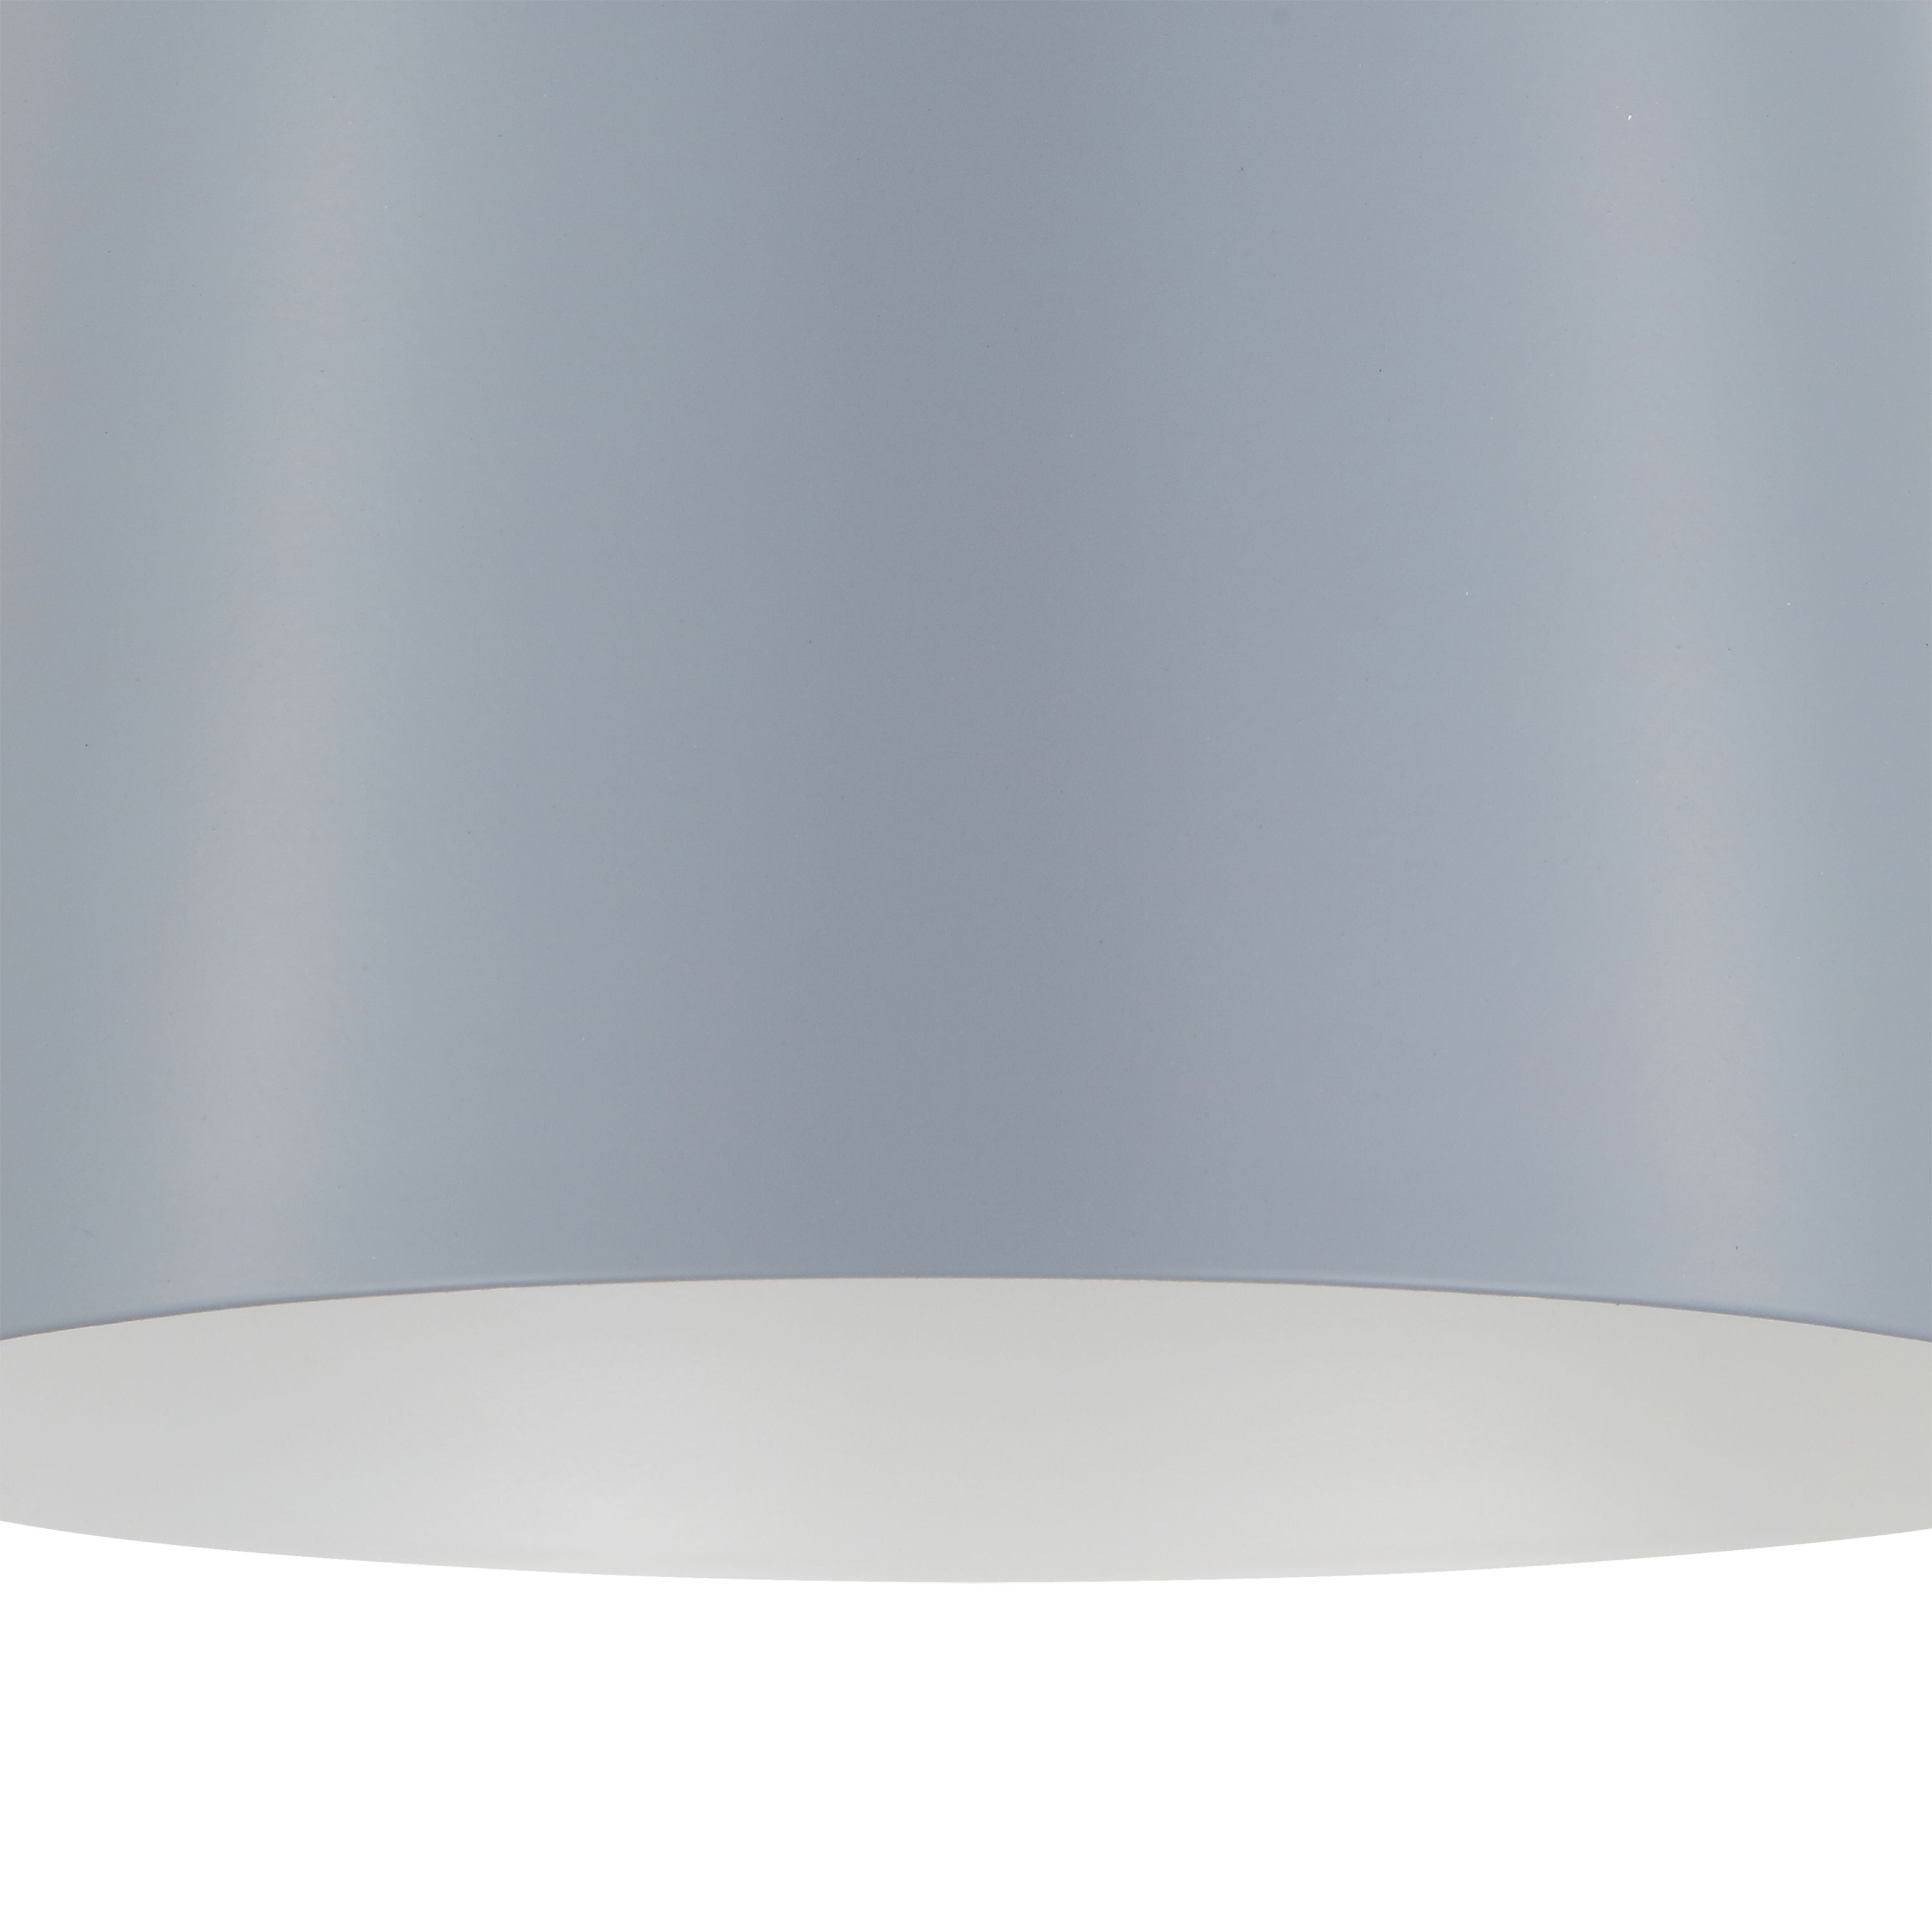 GoodHome Calume Light grey Bell Light shade (D)18cm